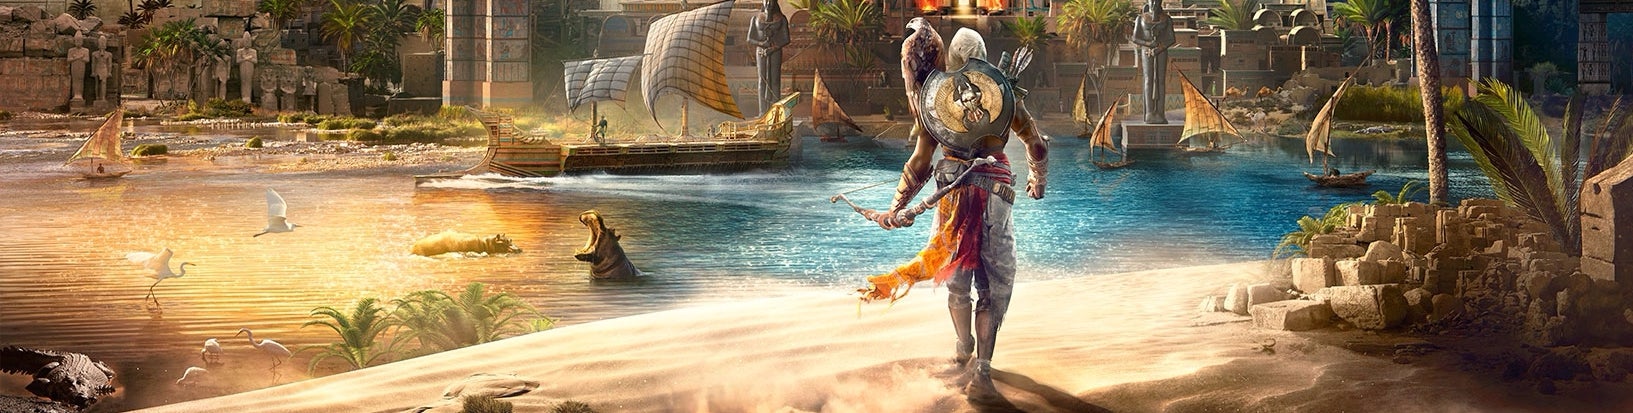 Imagem para Assassin's Creed Origins: Está melhor na Xbox One X, mas até que ponto?